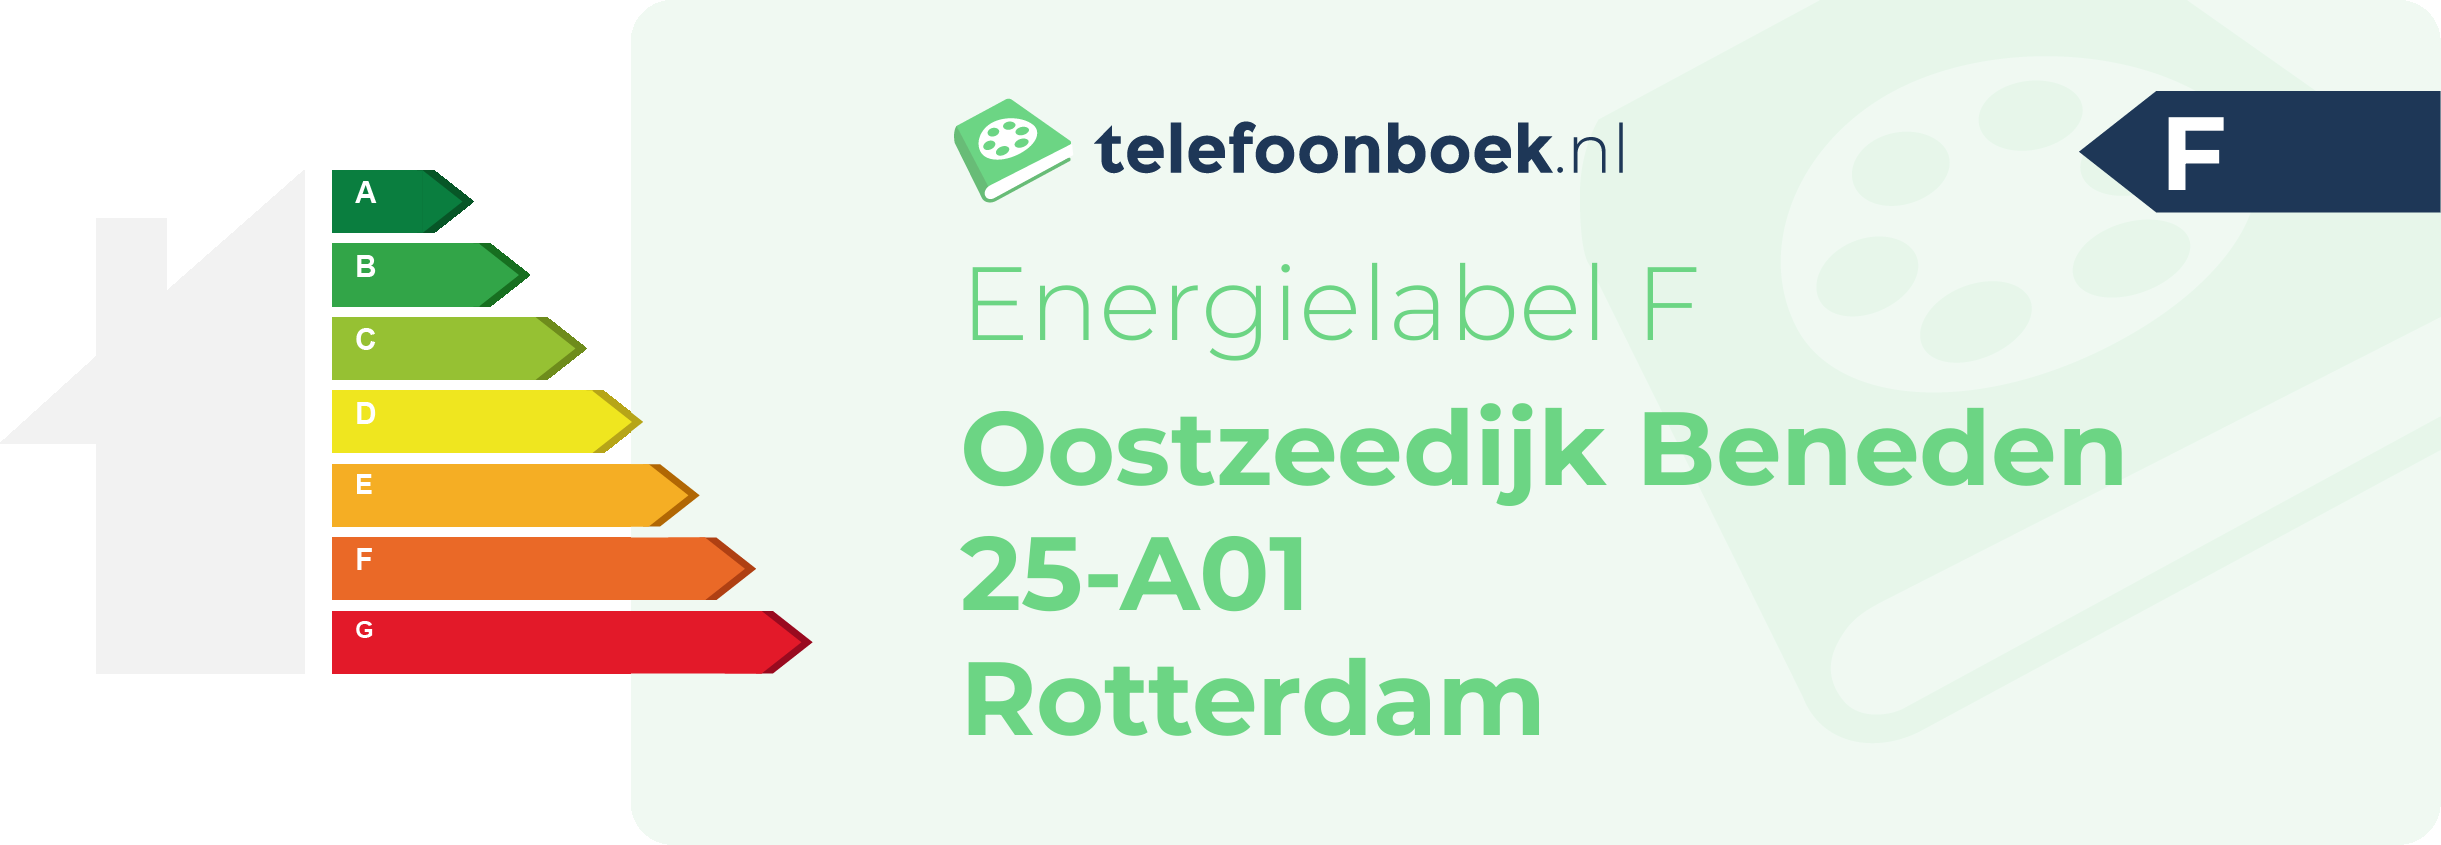 Energielabel Oostzeedijk Beneden 25-A01 Rotterdam